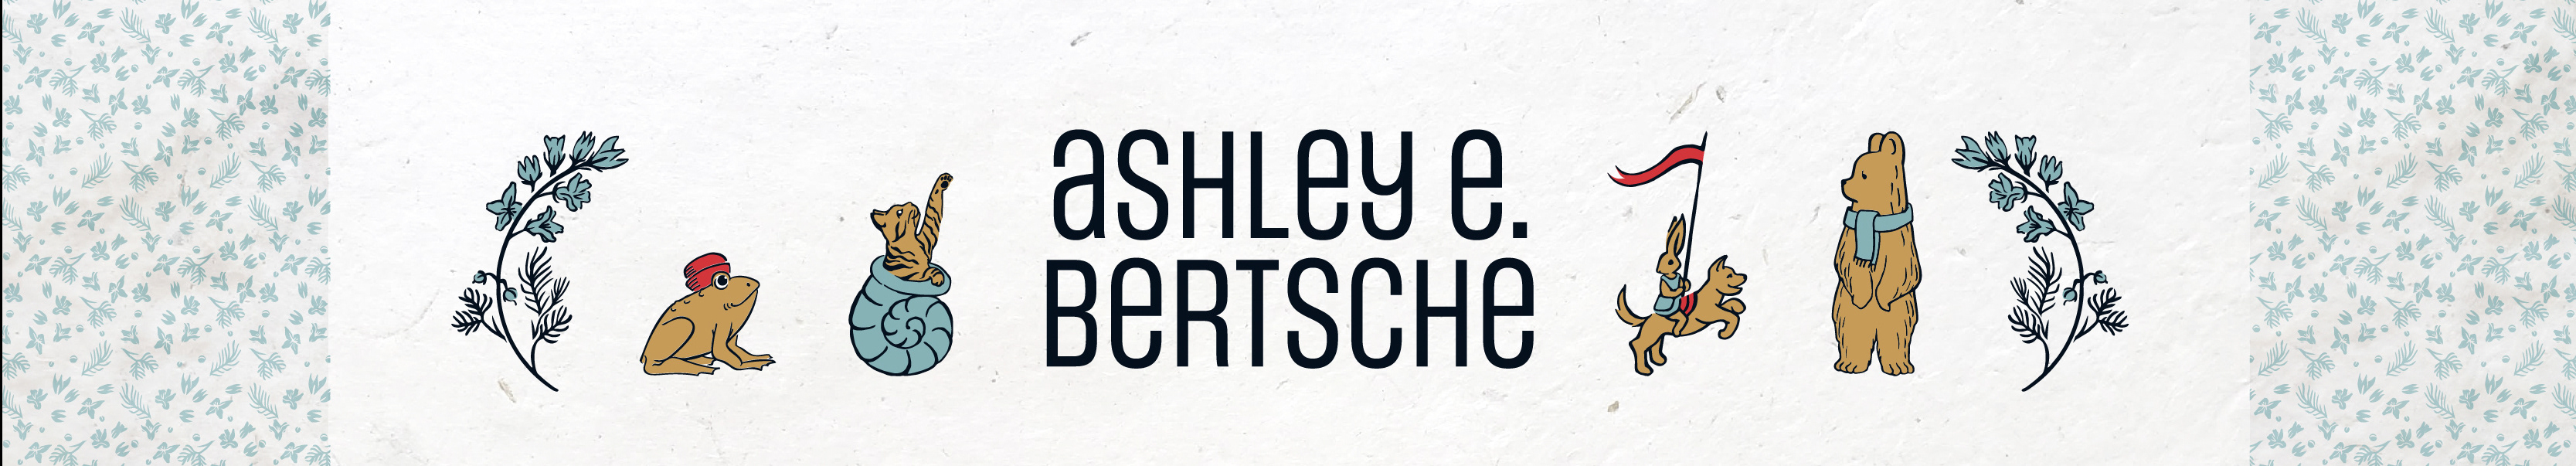 Ashley Bertsche's profile banner